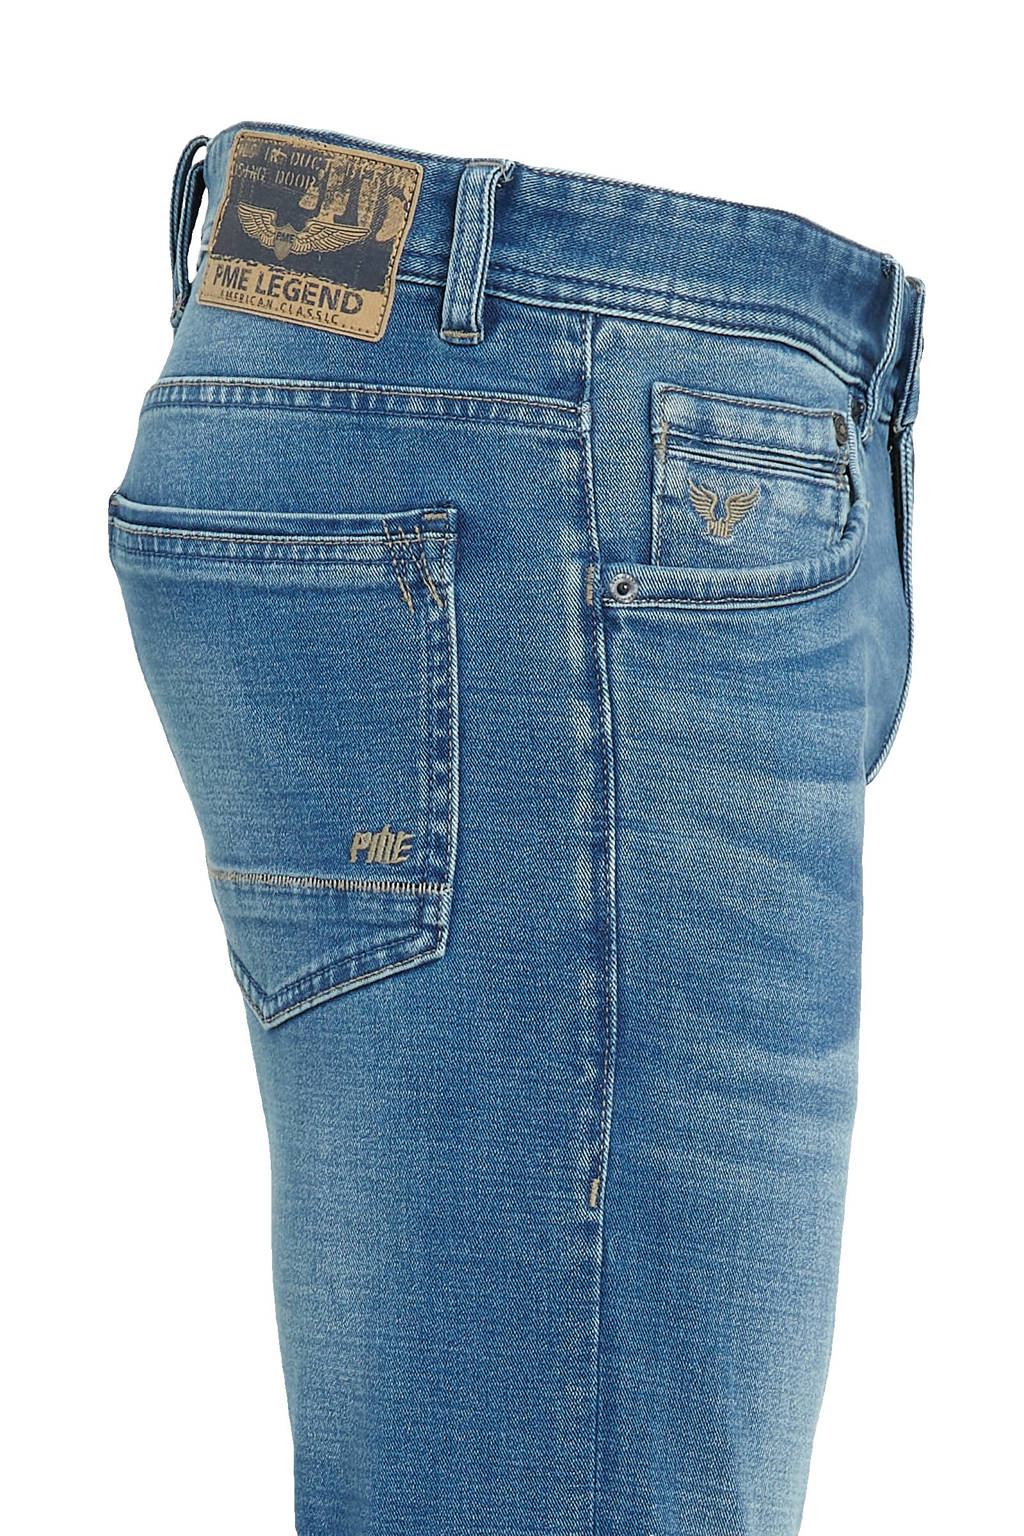 jeans Legend blue fit River slim PME soft mid | Union Tailwheel